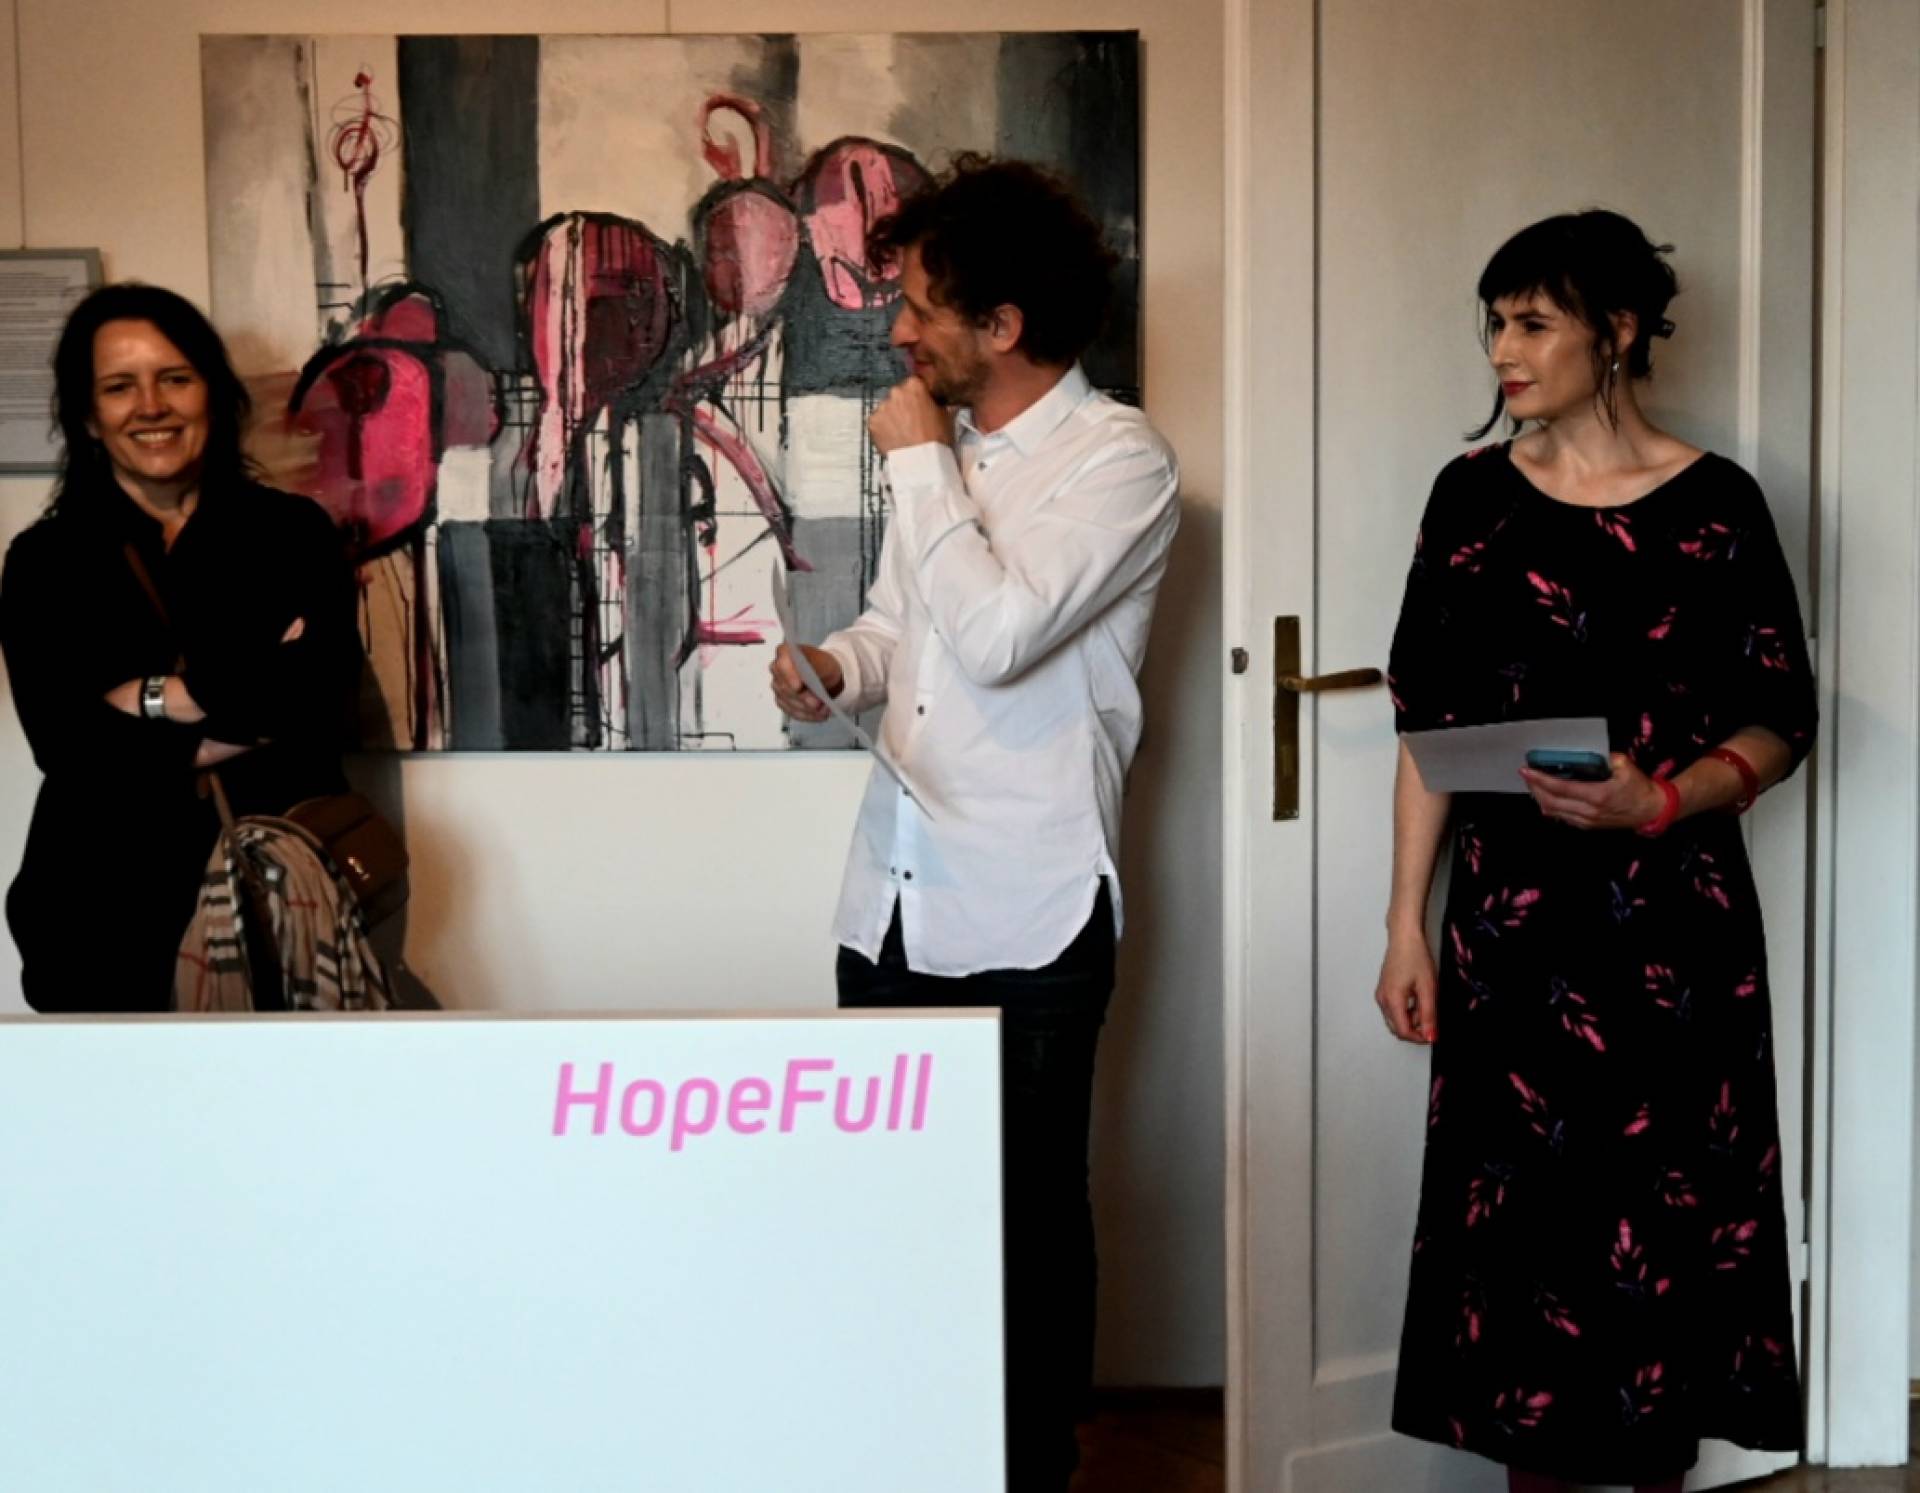 Wystawa "HopeFull" Marii Husarskiej w Arsene Galeria Wiatrak